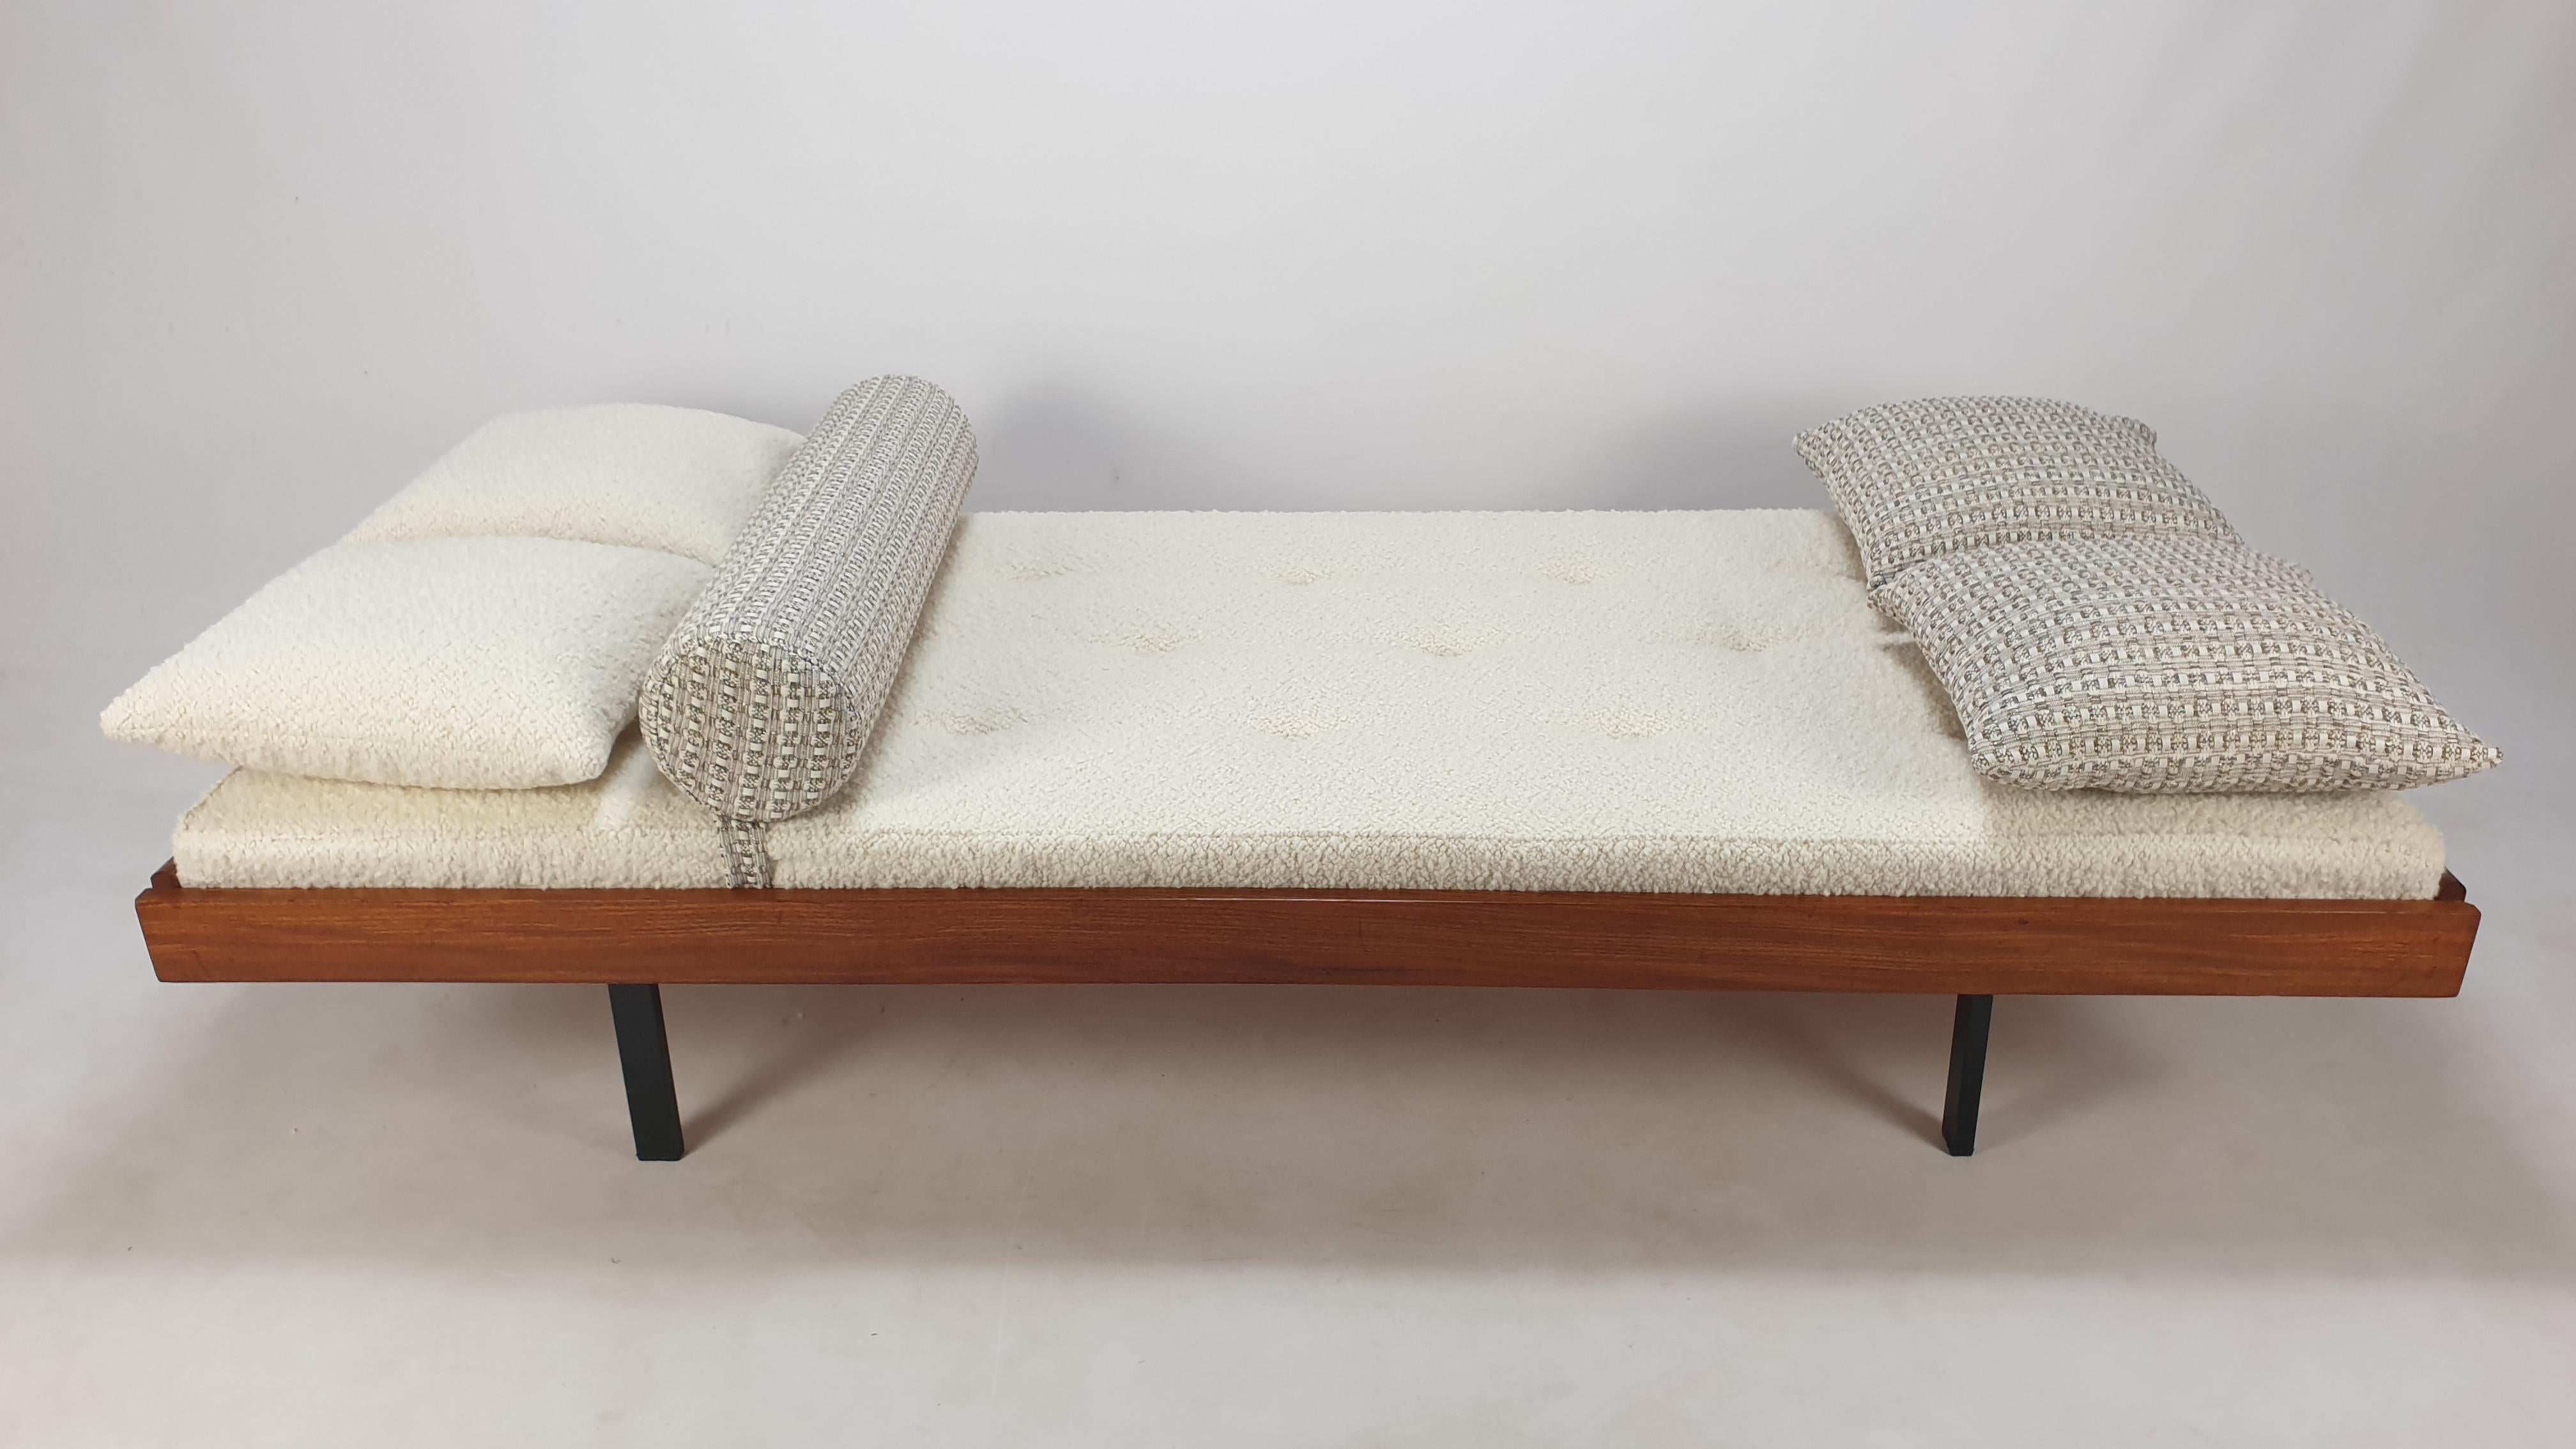 Sehr schönes Teakholz-Tagesbett, hergestellt in den Niederlanden in den 60er Jahren. 
Es hat 4 klappbare Füße, siehe die letzten Bilder.

Die Matratze wurde mit neuem Schaumstoff erneuert und mit einem schönen italienischen Bouclé-Wollstoff